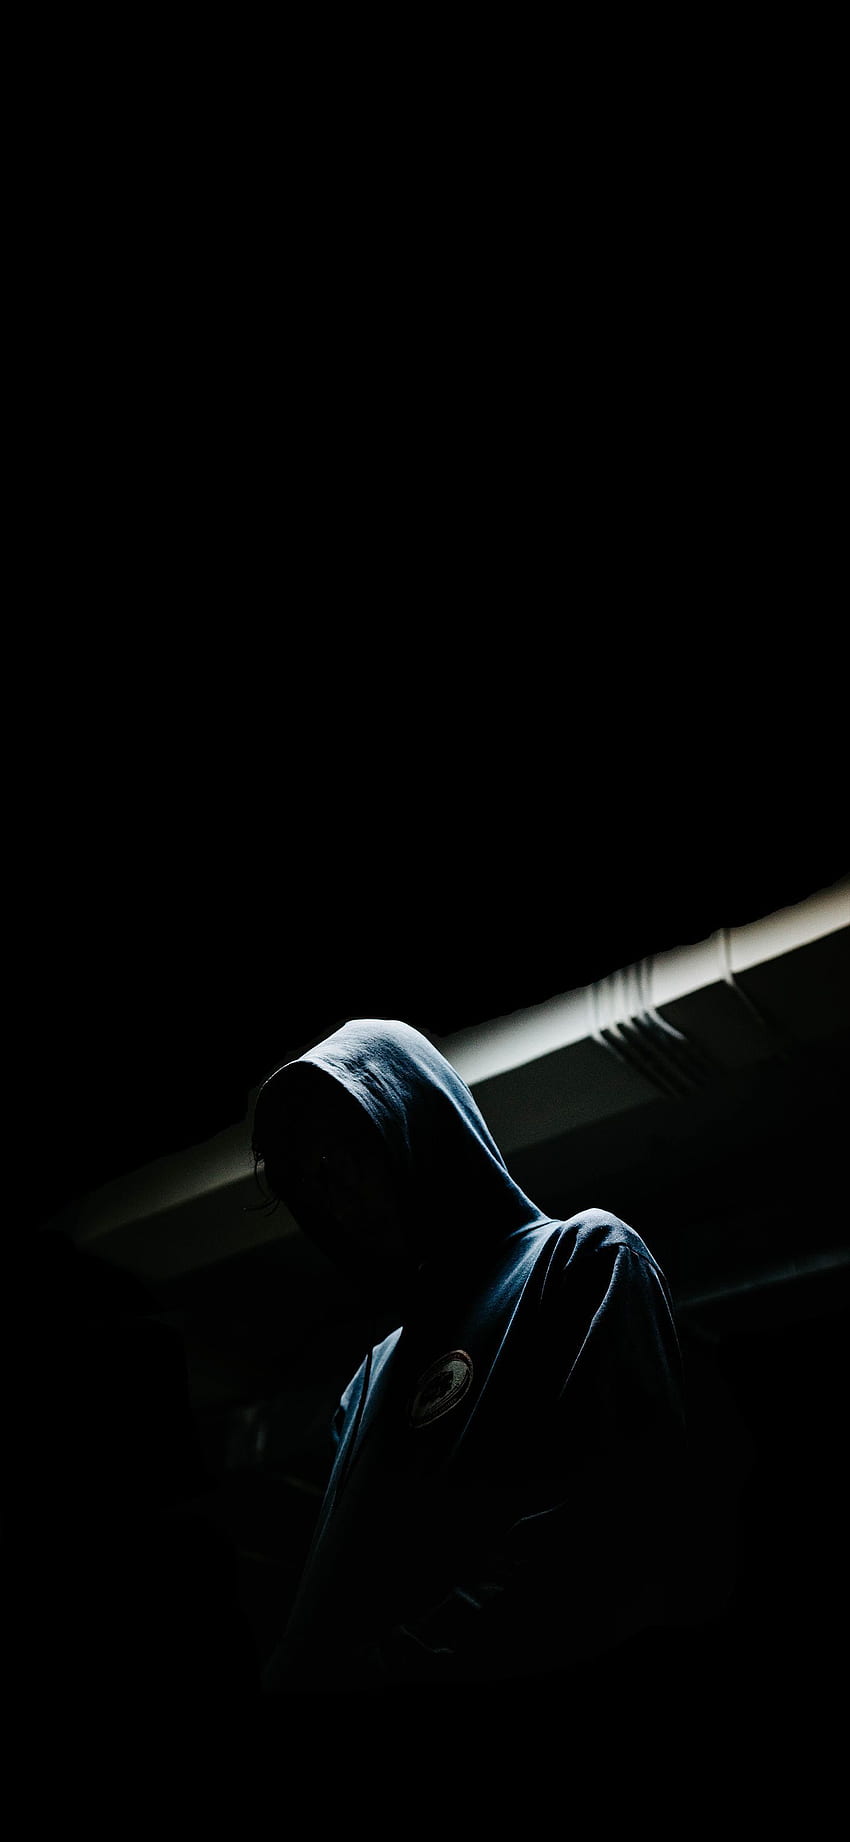 Dark Hoodie Guy  IPhone Wallpapers  iPhone Wallpapers